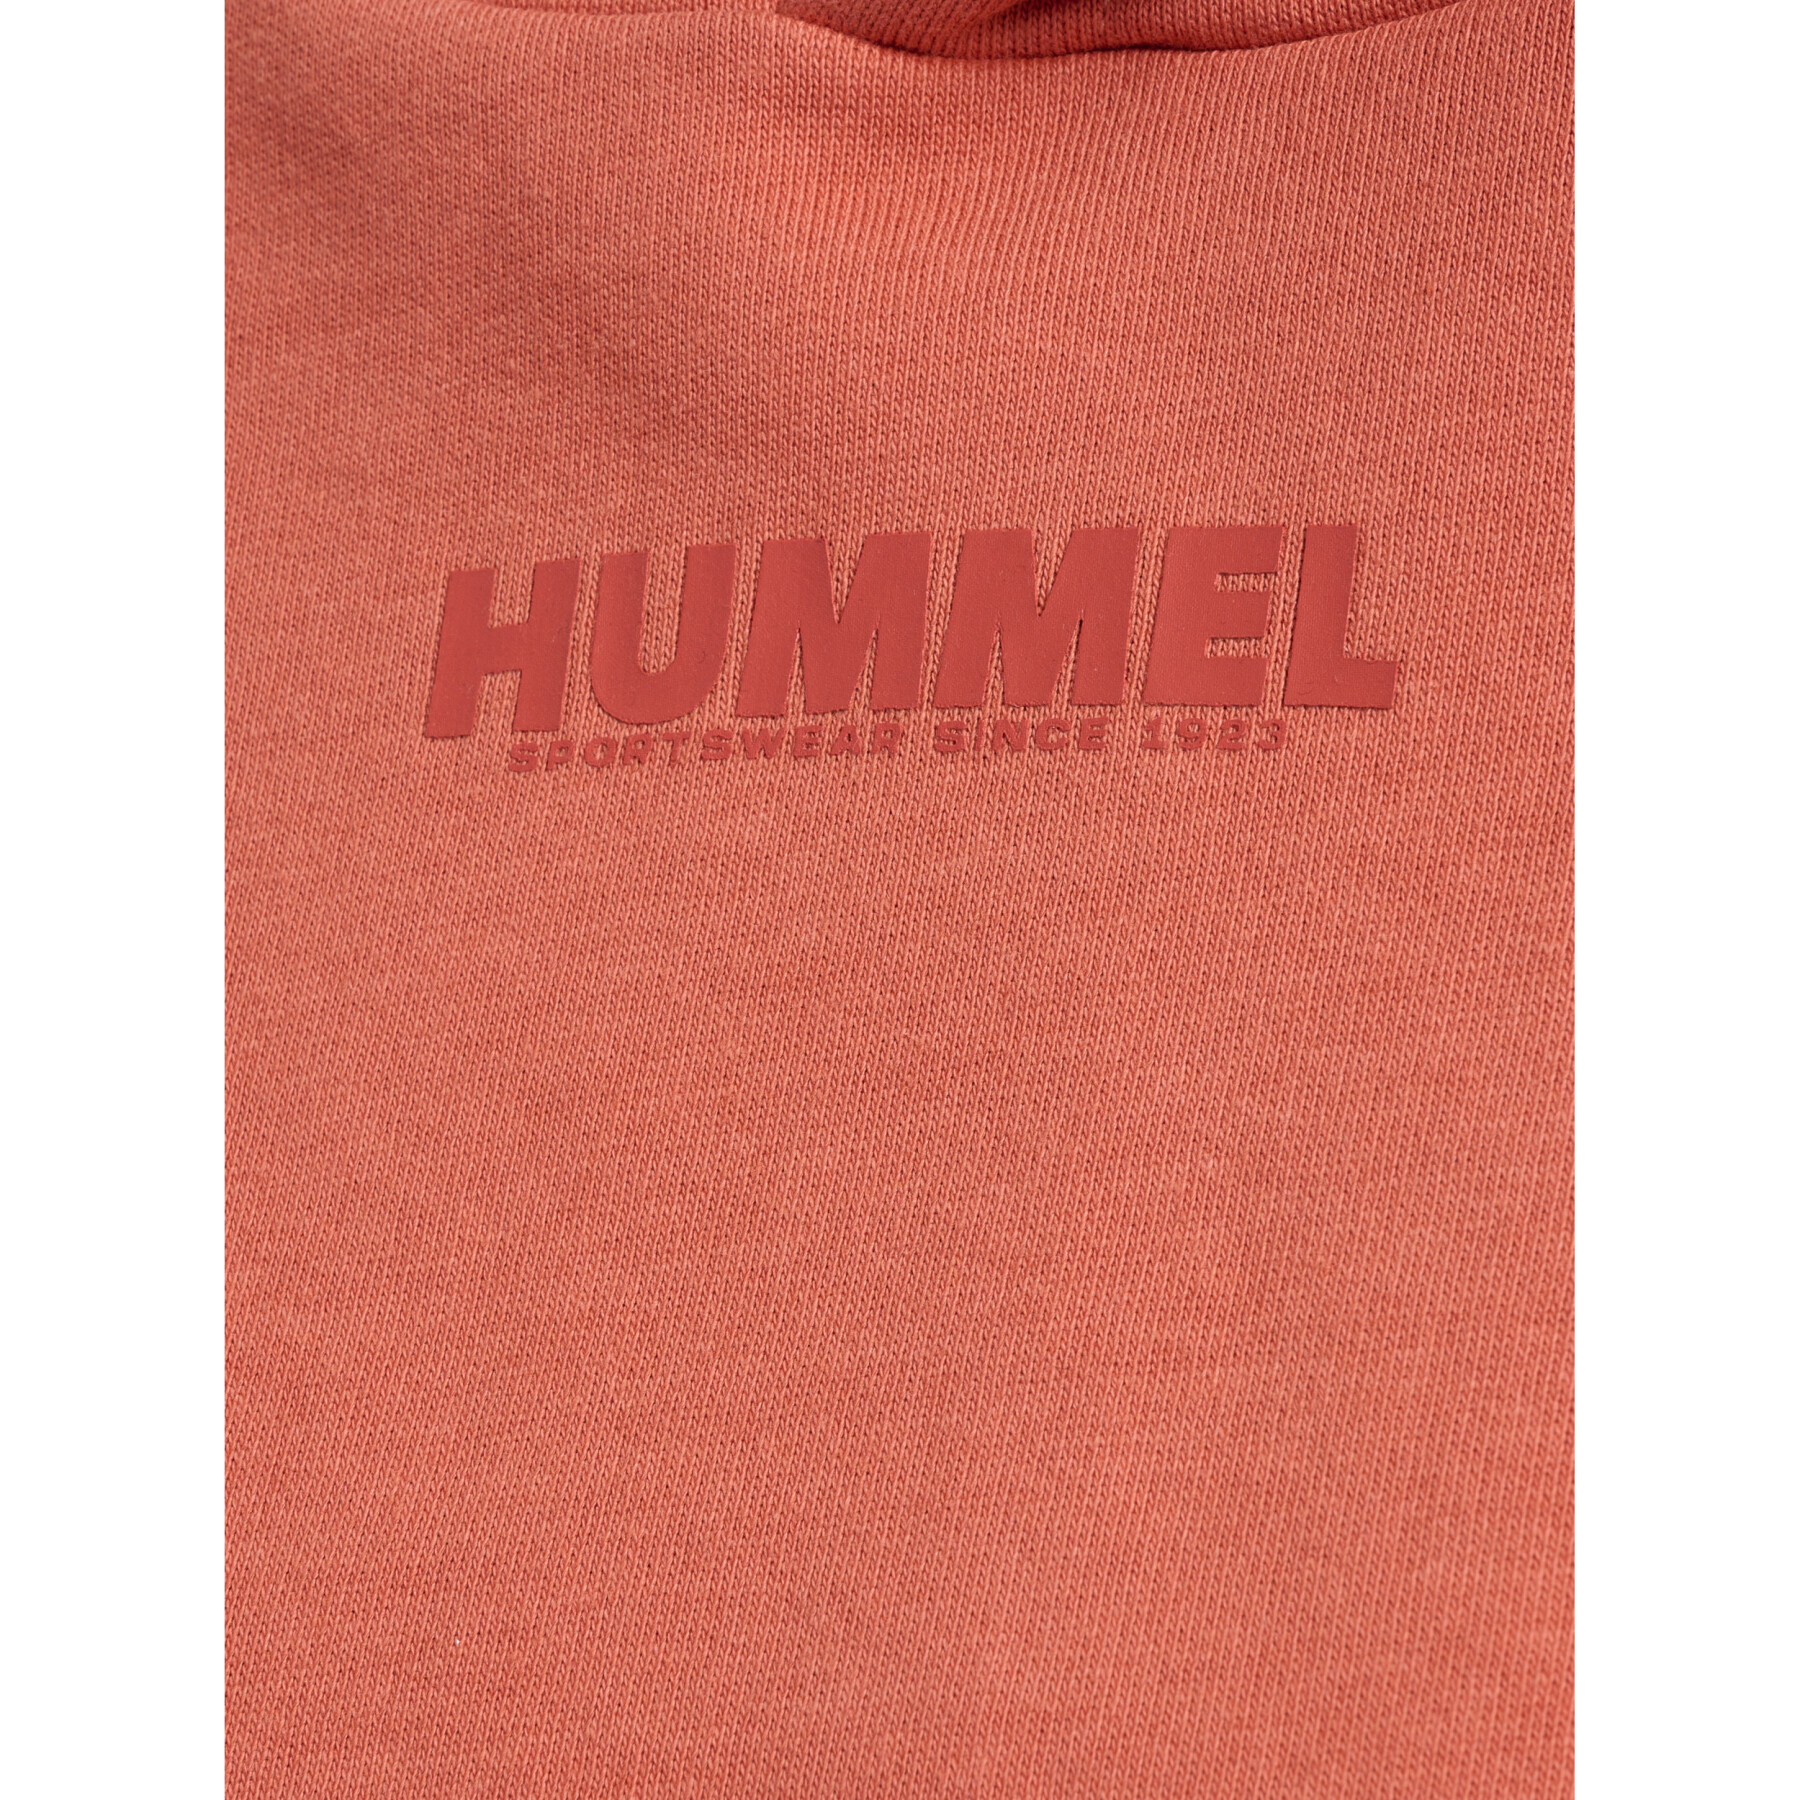 Cropped-Sweatshirt mit Kapuze, Damen Hummel Legacy